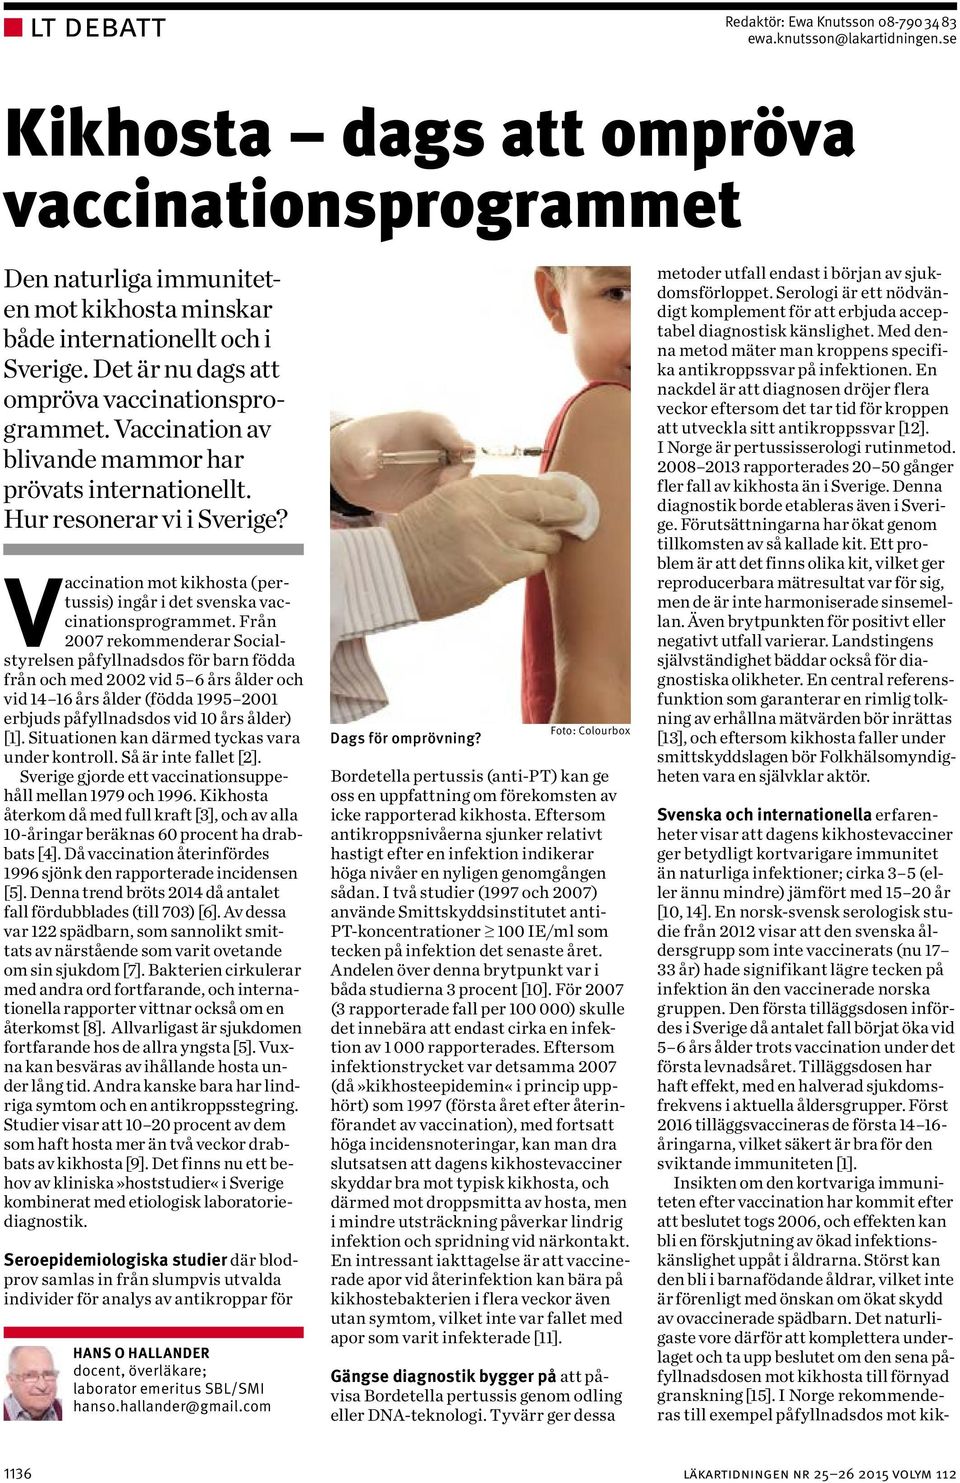 Vaccination av blivande mammor har prövats internationellt. Hur resonerar vi i Sverige? Vaccination mot kikhosta (pertussis) ingår i det svenska vaccinationsprogrammet.